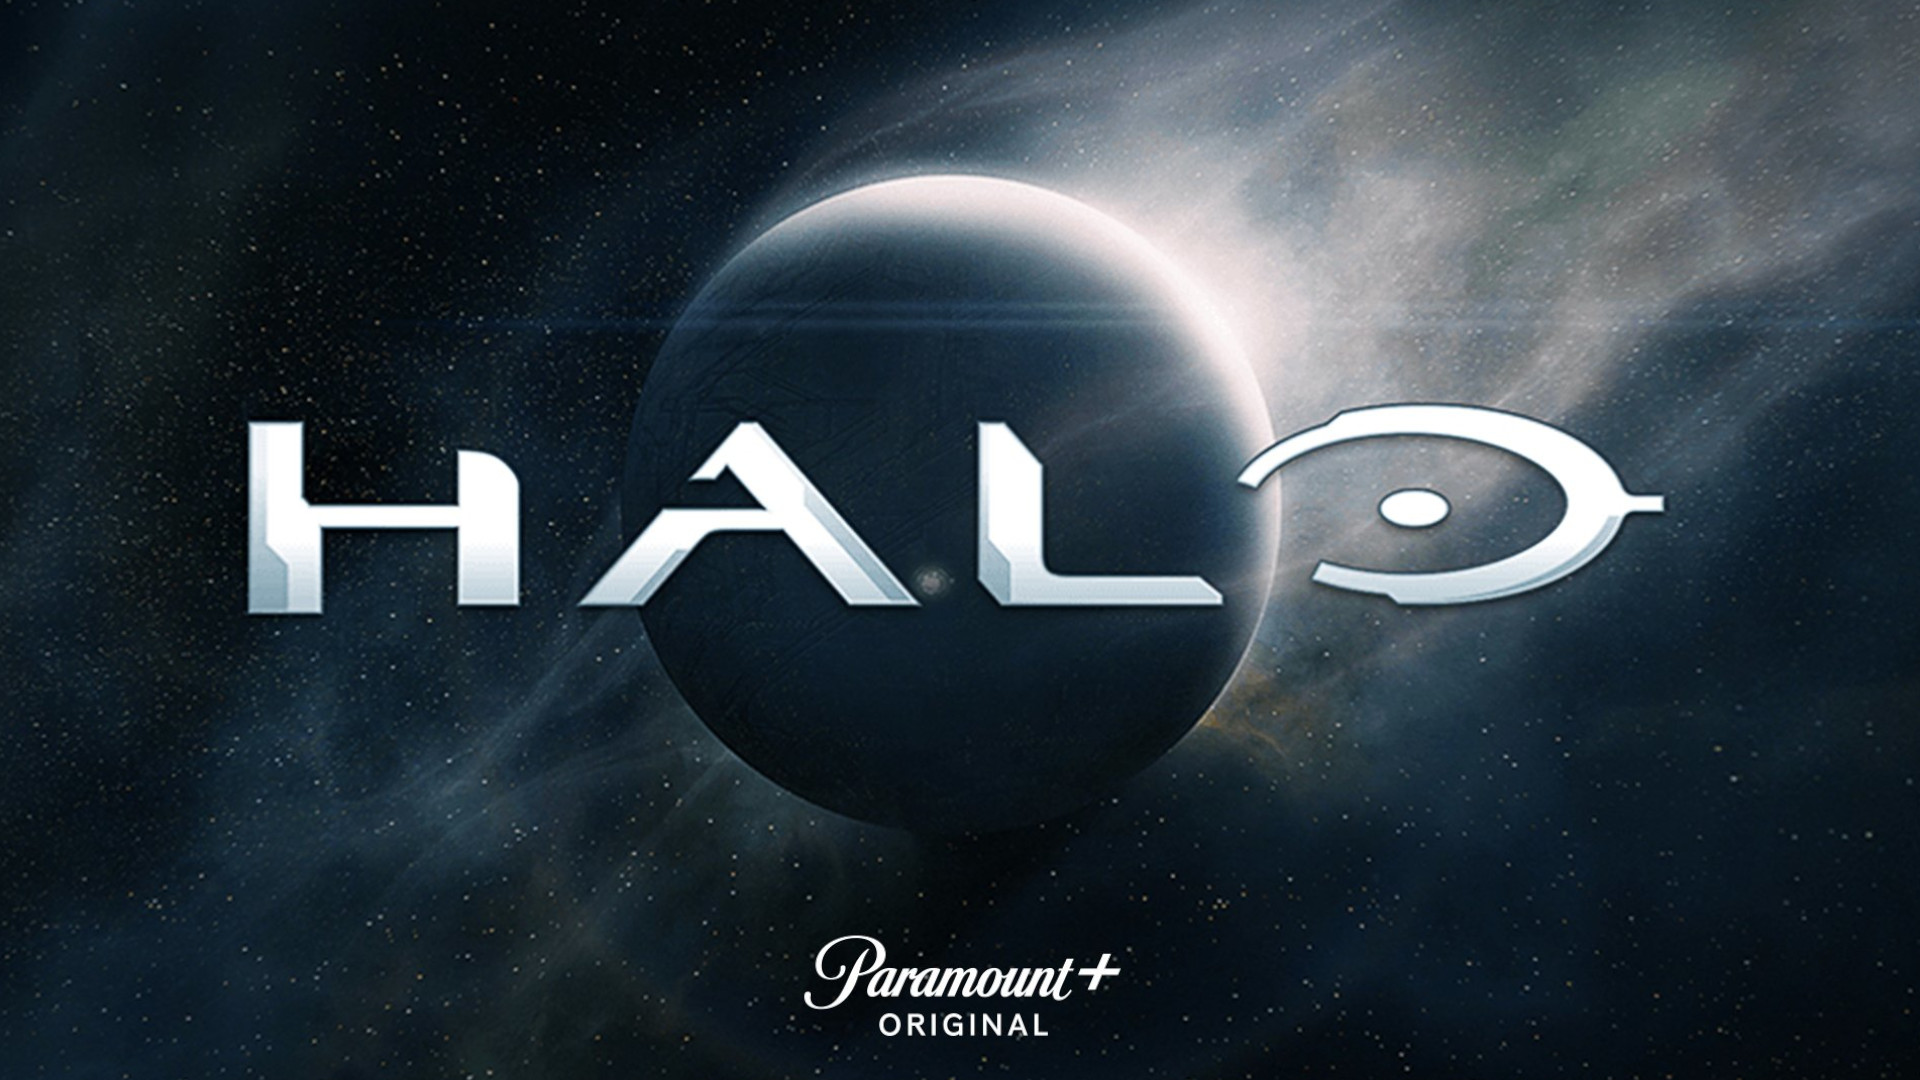 Halo TV Show Trailer Reveals Live-Action Covenant Aliens & Cortana